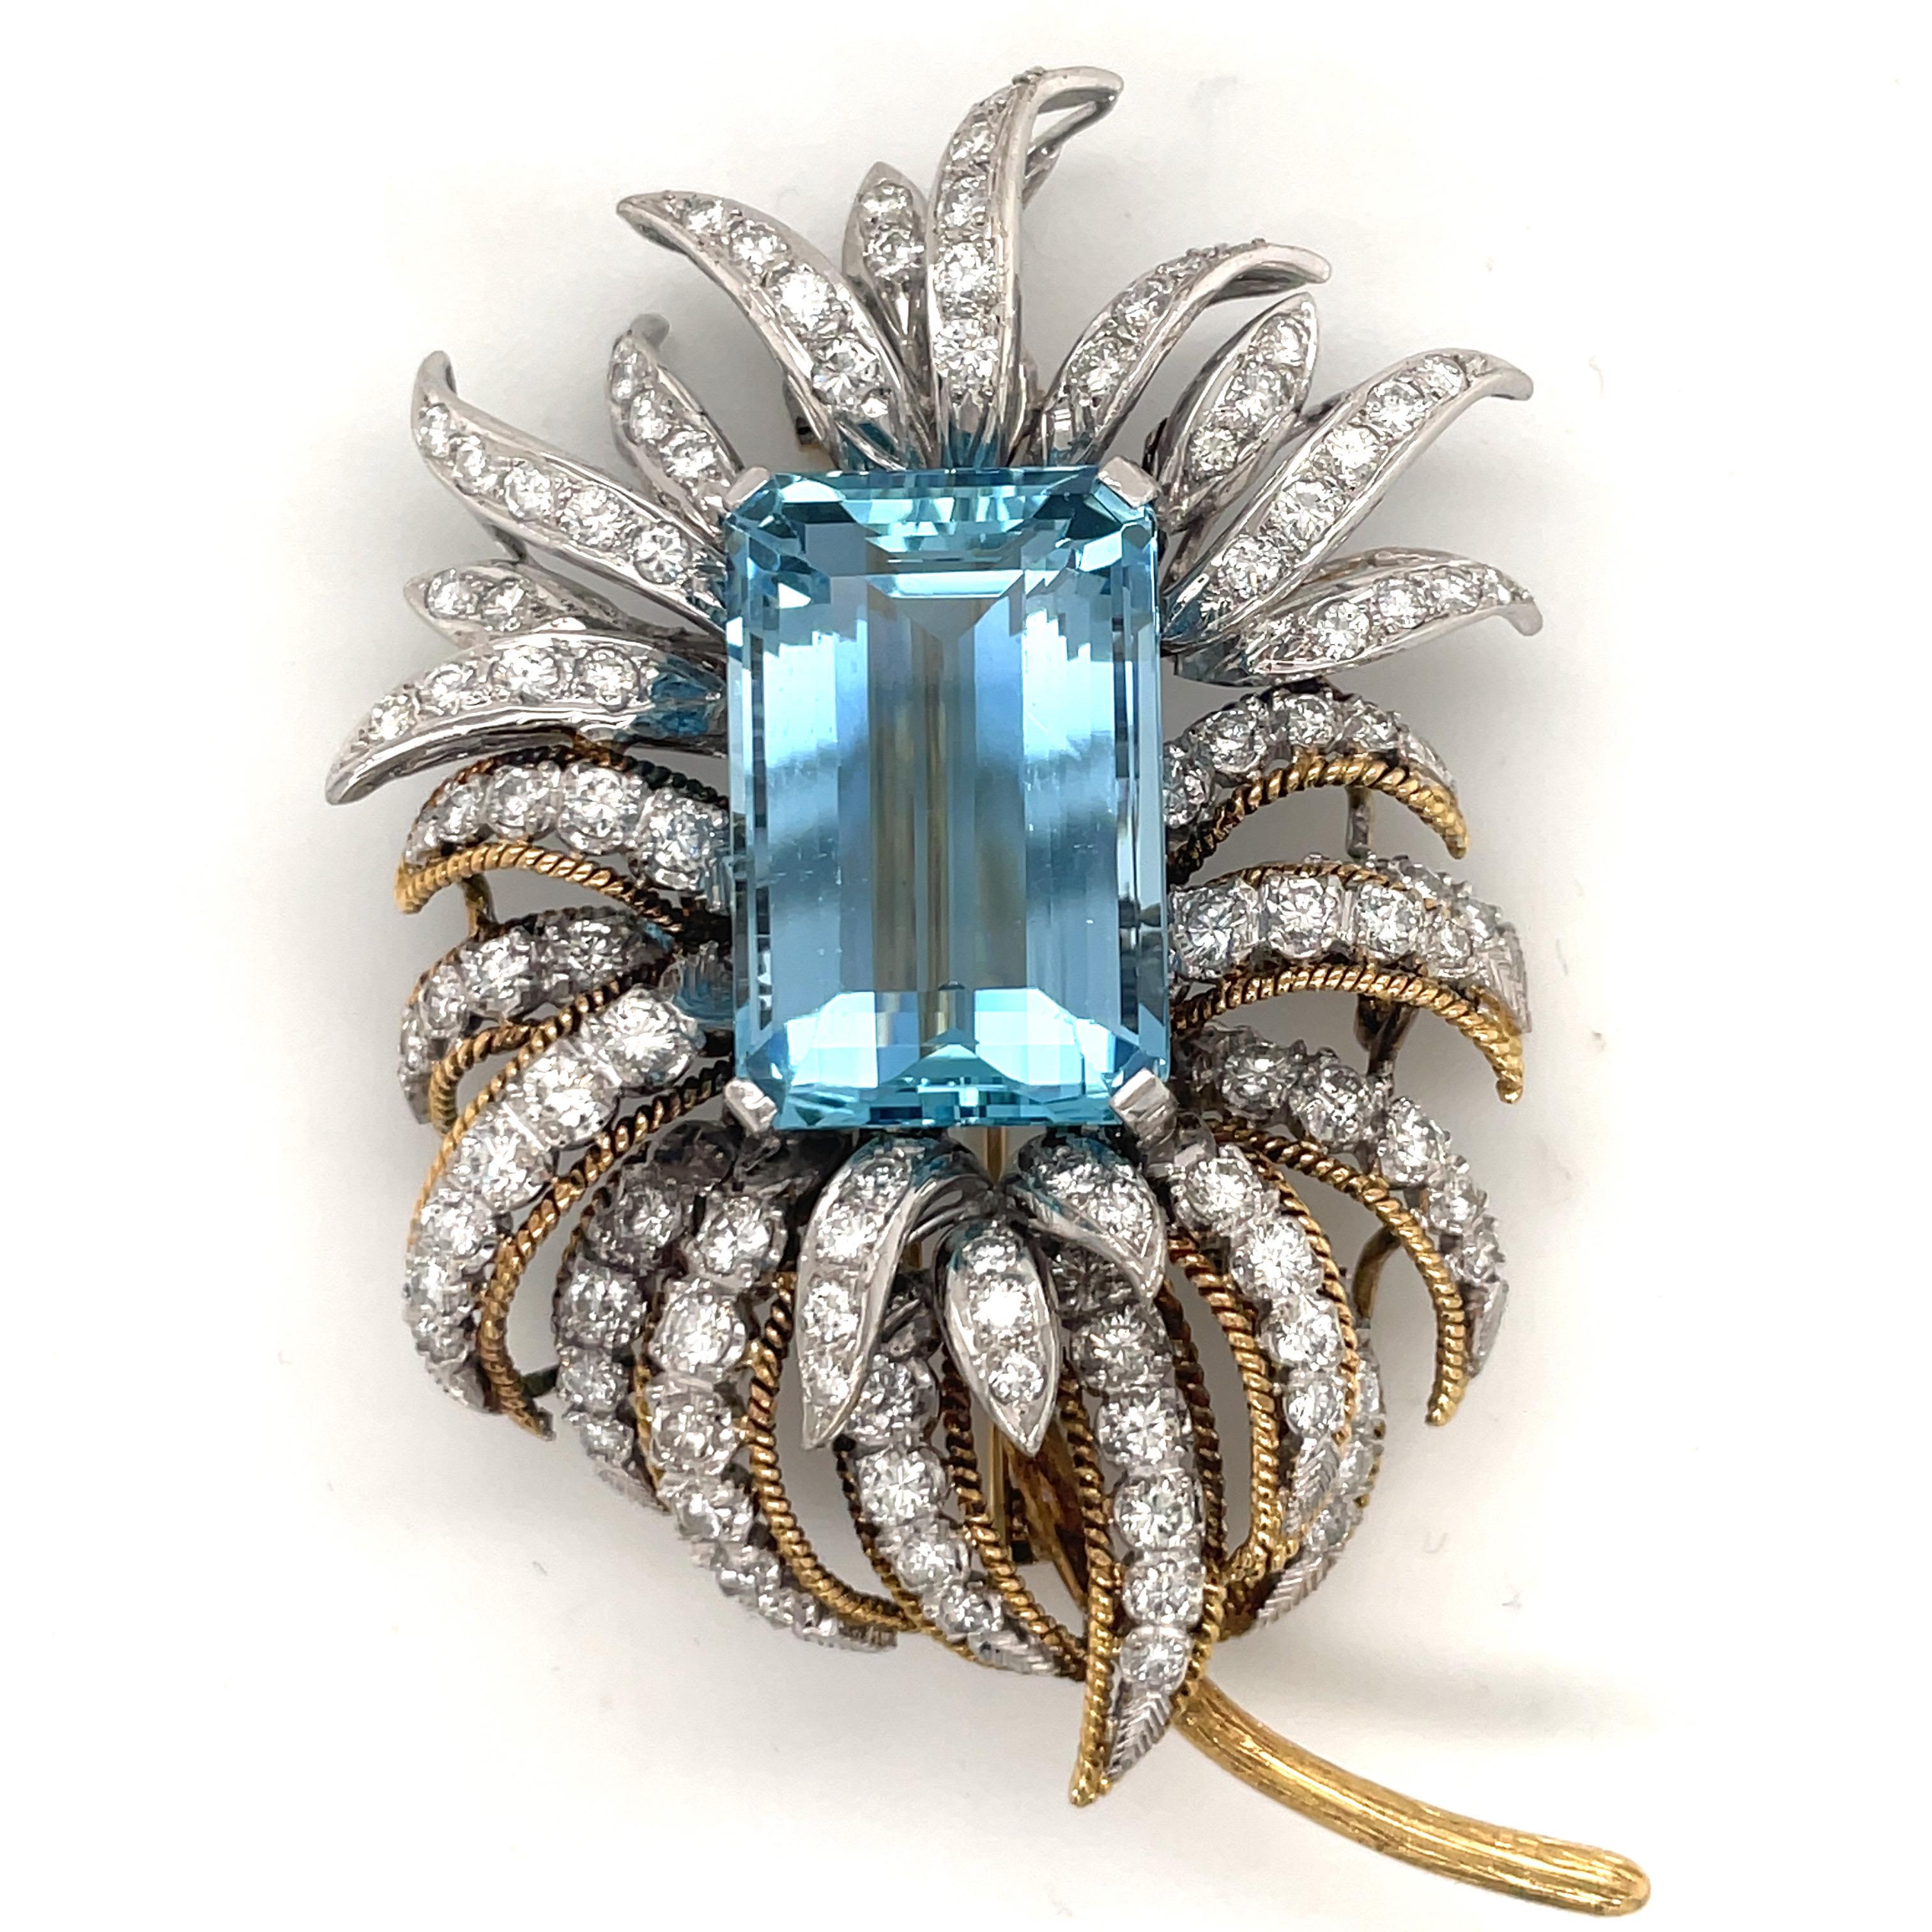 Emerald Cut Oversized Aquamarine Diamond Floral Pin 44.50 Carats 18 Karat Yellow Gold